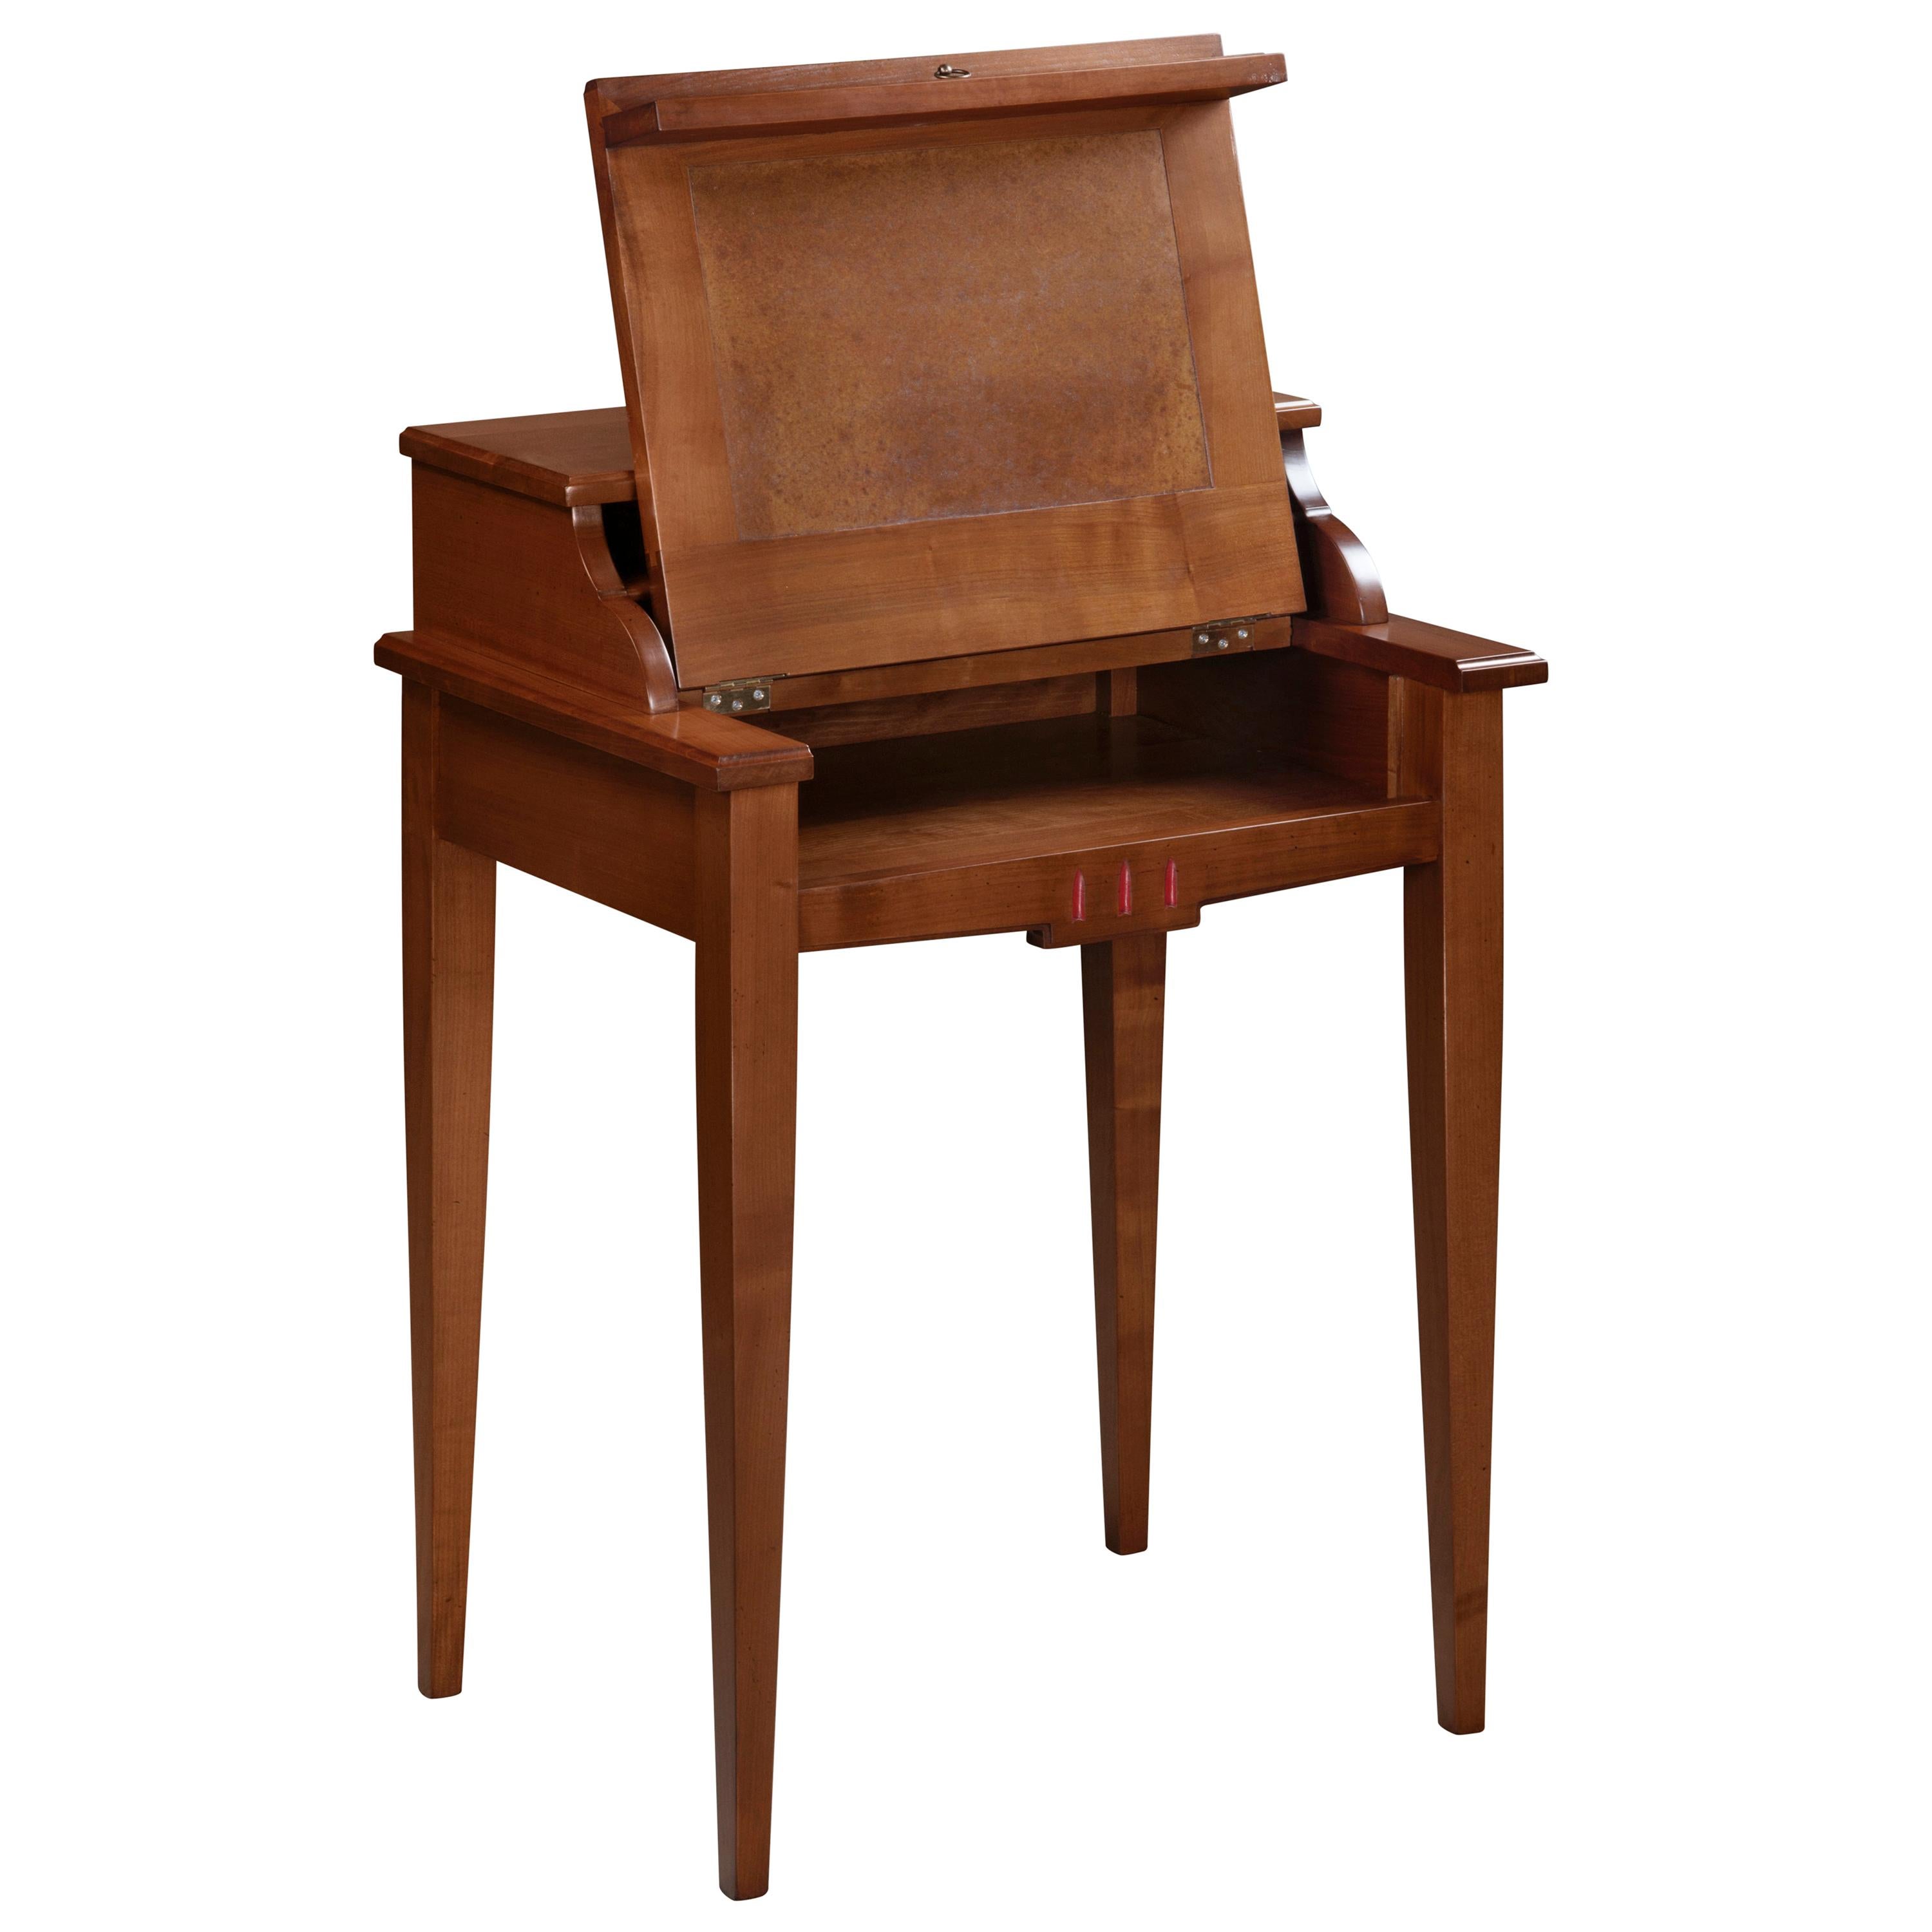 Dieser Schreibtisch gehört zur Kollektion MELANIE, die handwerklich modernisierte und neu interpretierte Möbelstücke aus dem französischen Directoire-Stil des ausgehenden 18. Jahrhunderts anbietet.
Diese Periode zeichnet sich durch ihre geraden,